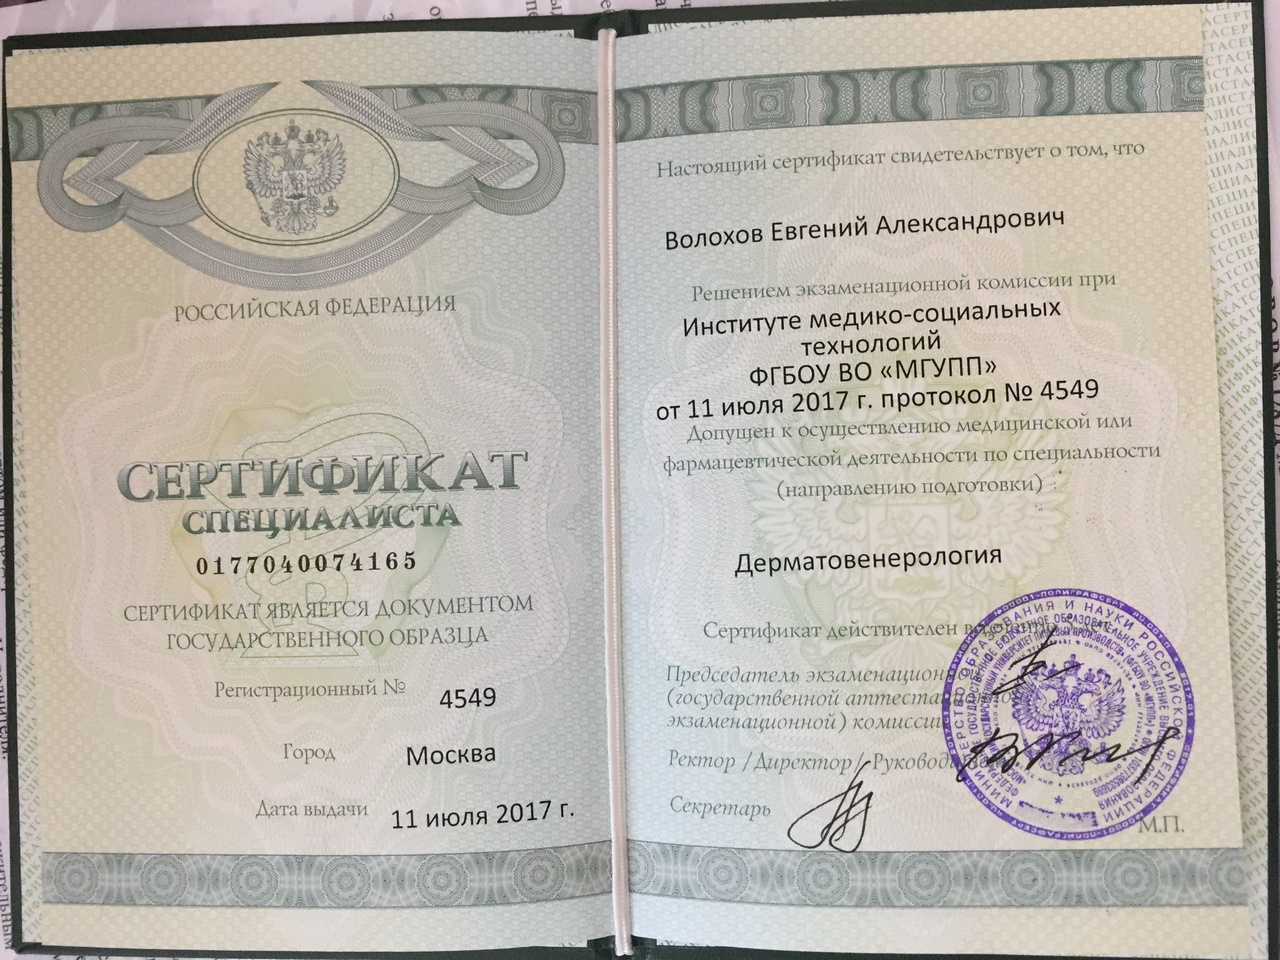 Сертификат специалиста Дерматовенерология Волохов Евгений Александрович